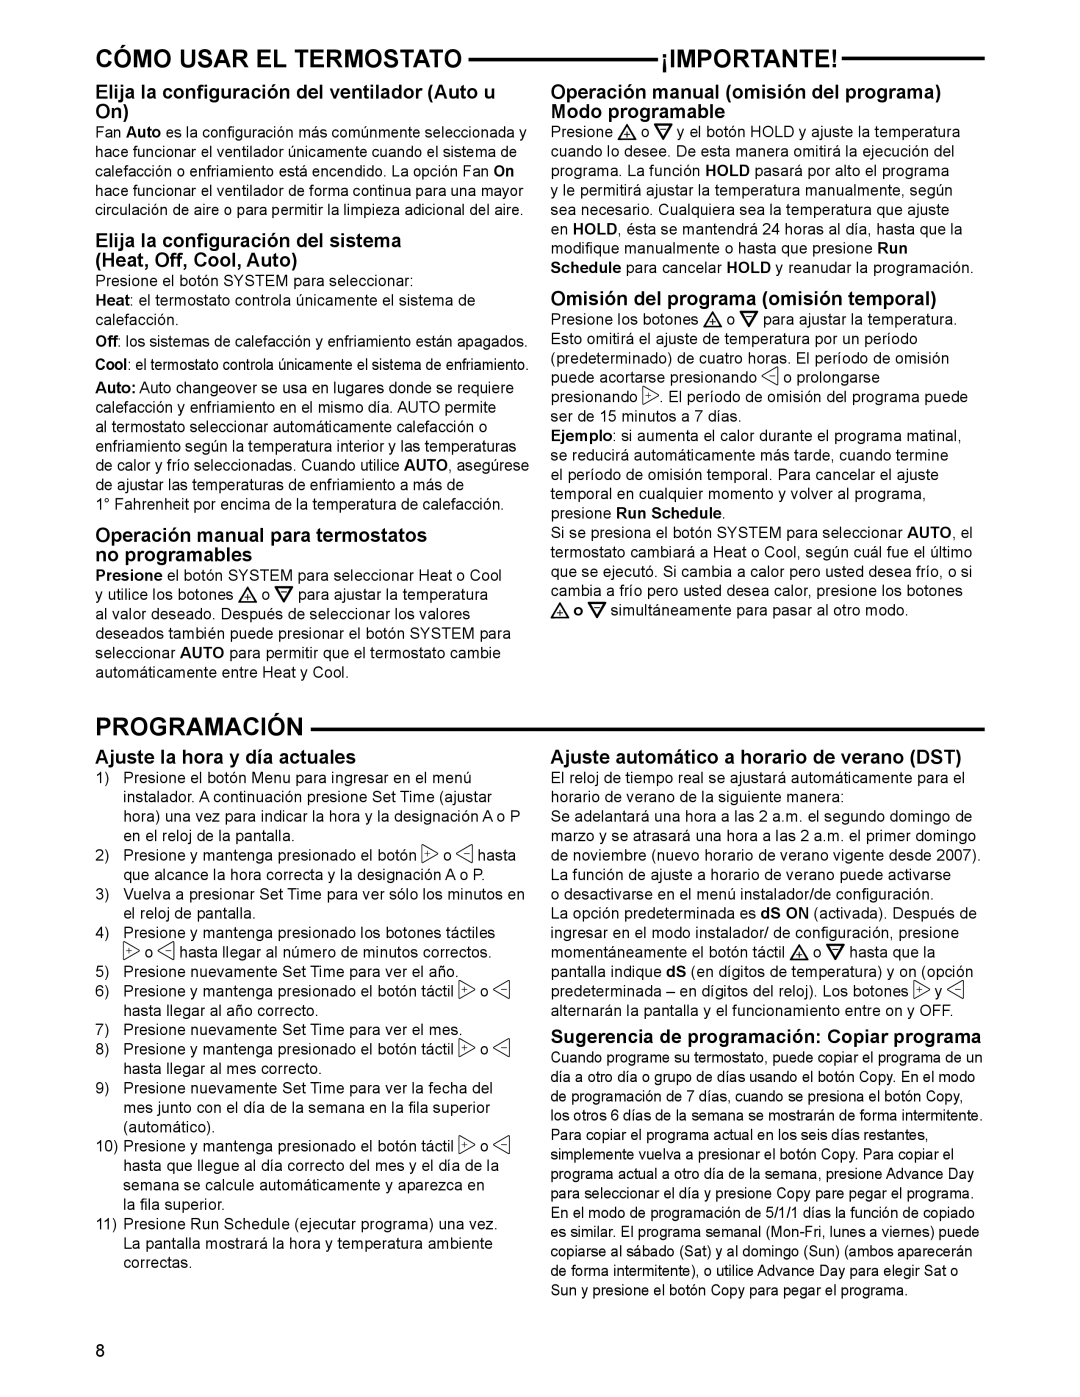 White Rodgers 1F97-1277 manual Cómo Usar El Termostato, ¡Importante, Programación, Omisión del programa omisión temporal 